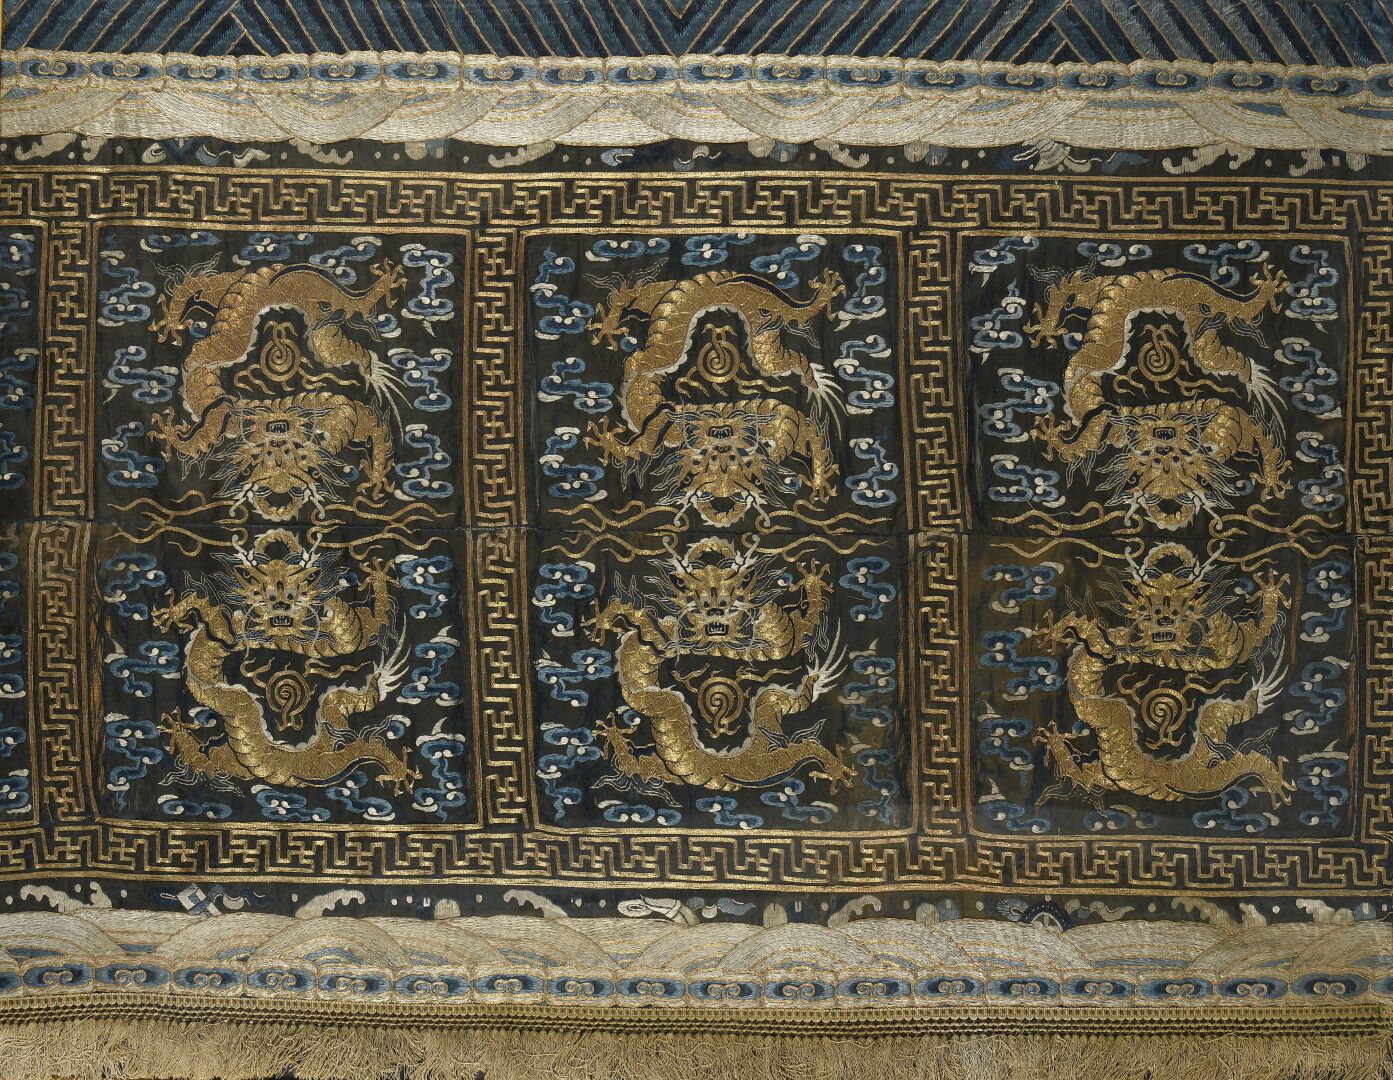 Null 绣有金色金属线的丝绸帐篷
中国，清末（1664-1911）。
三层装饰，云中有两条龙，边框上有饰物；有破损，有破损。
102 x 140 厘米